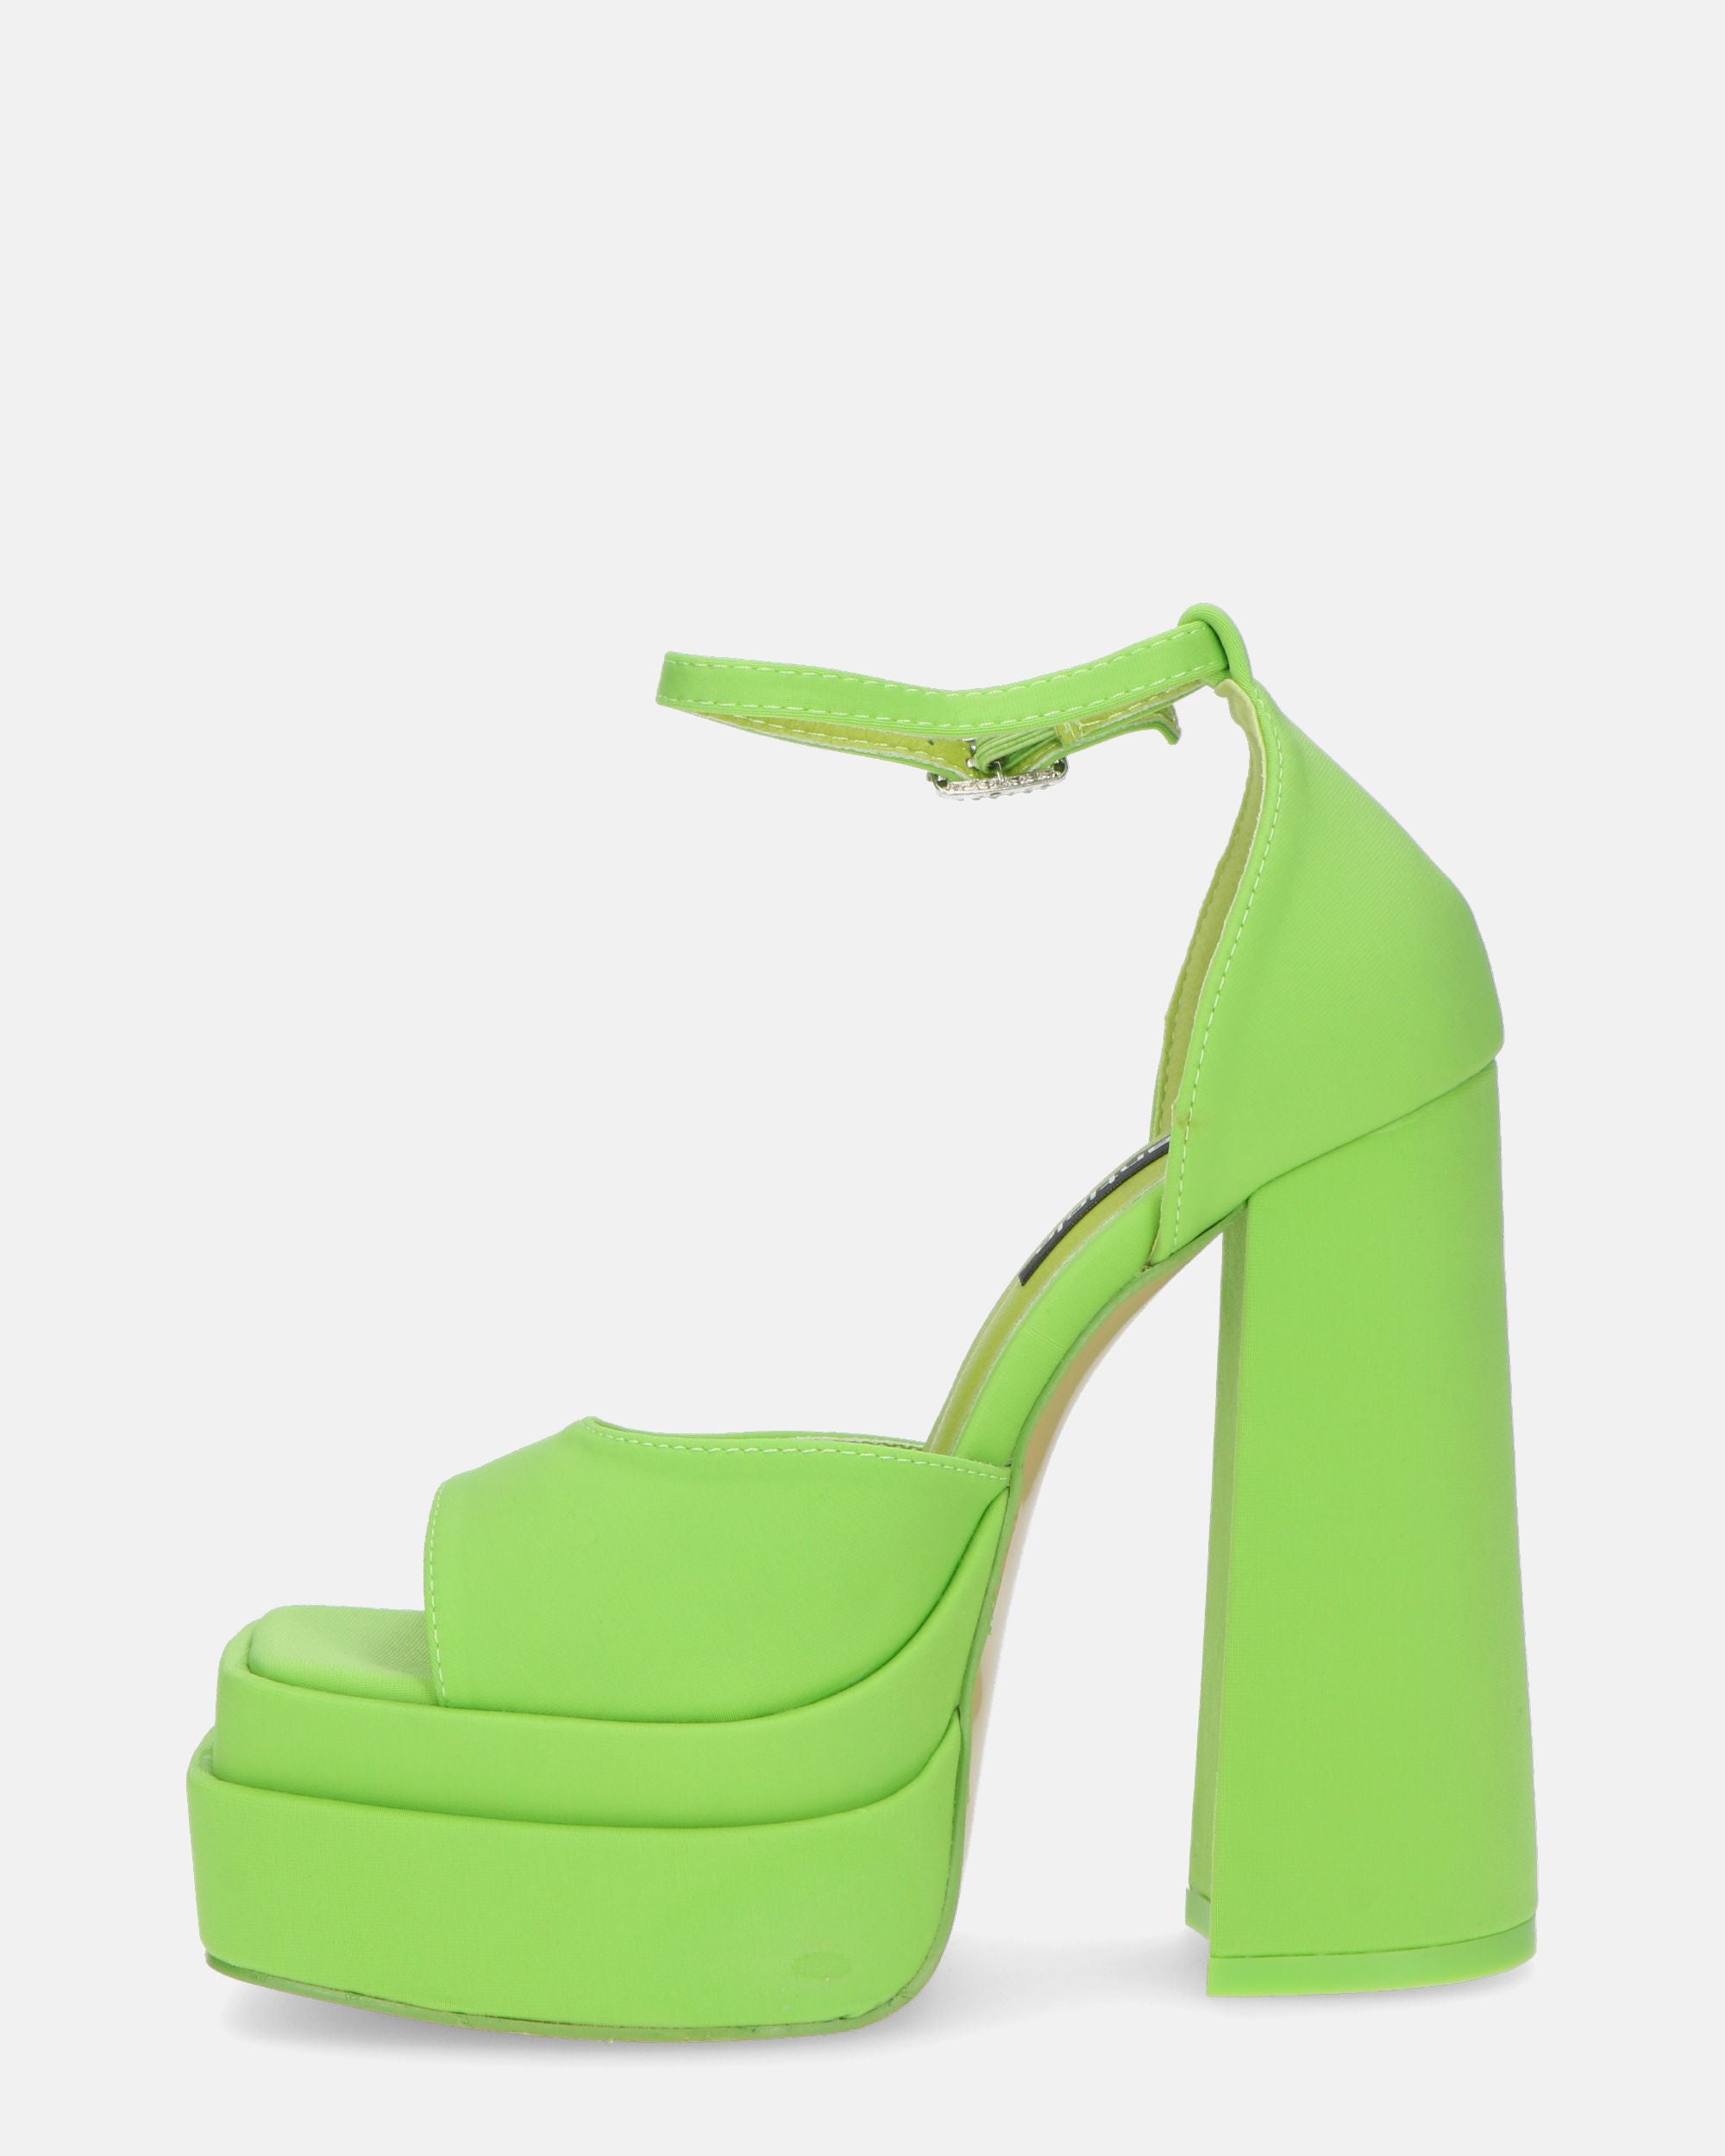 AVA - sandalias de tacón alto en lycra verde y pedrería en la tira